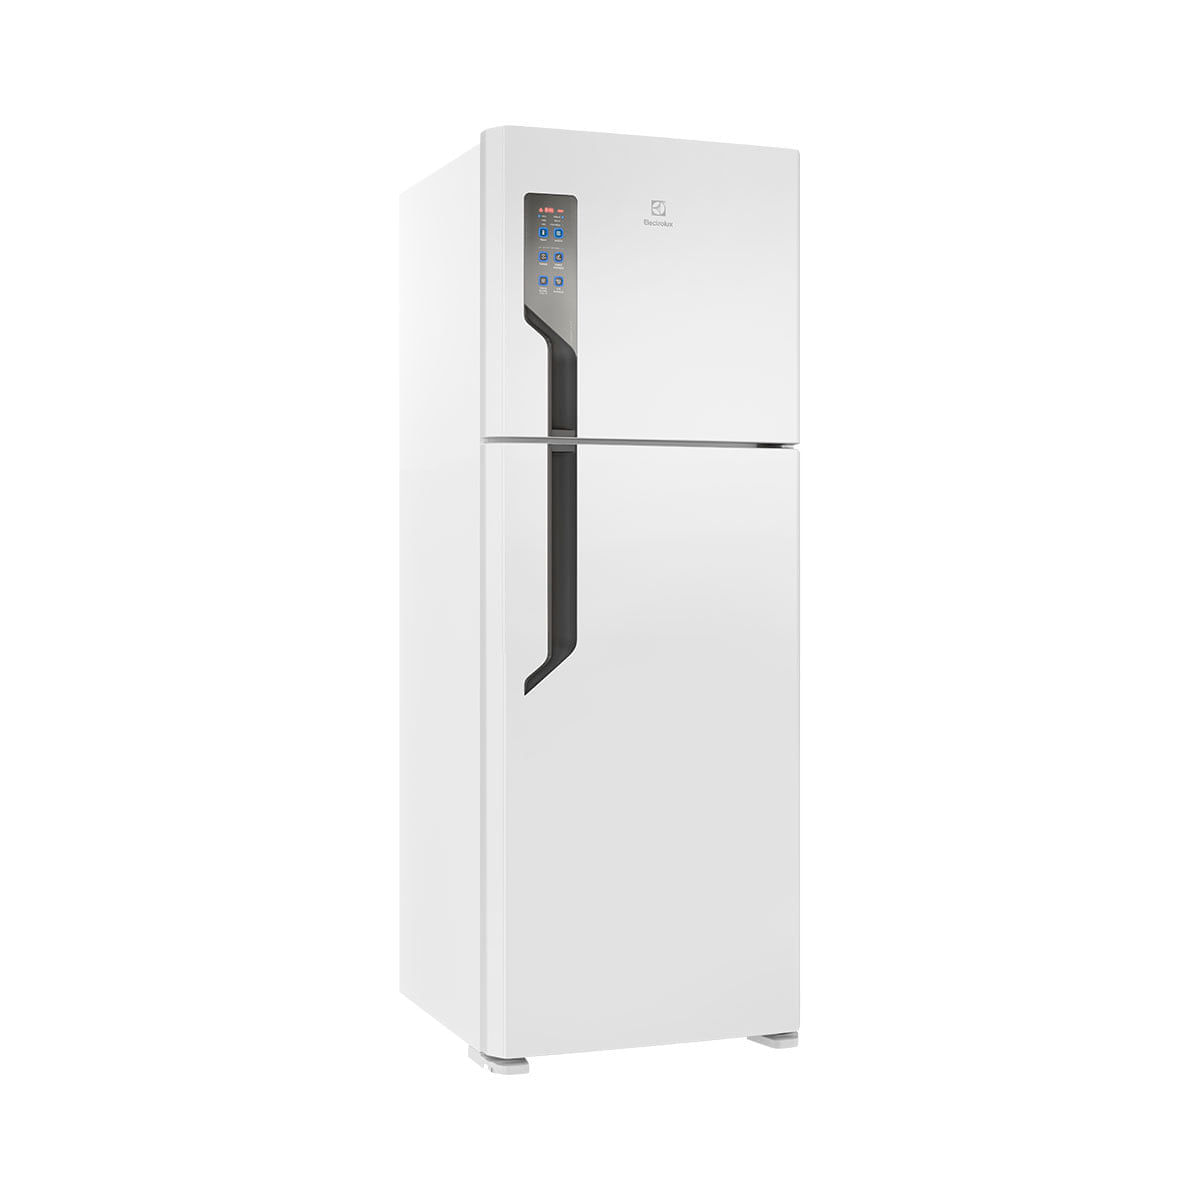 Menor preço em Geladeira Electrolux Frost Free Top Freezer 2 Portas TF56 474 Litros Branca 220V